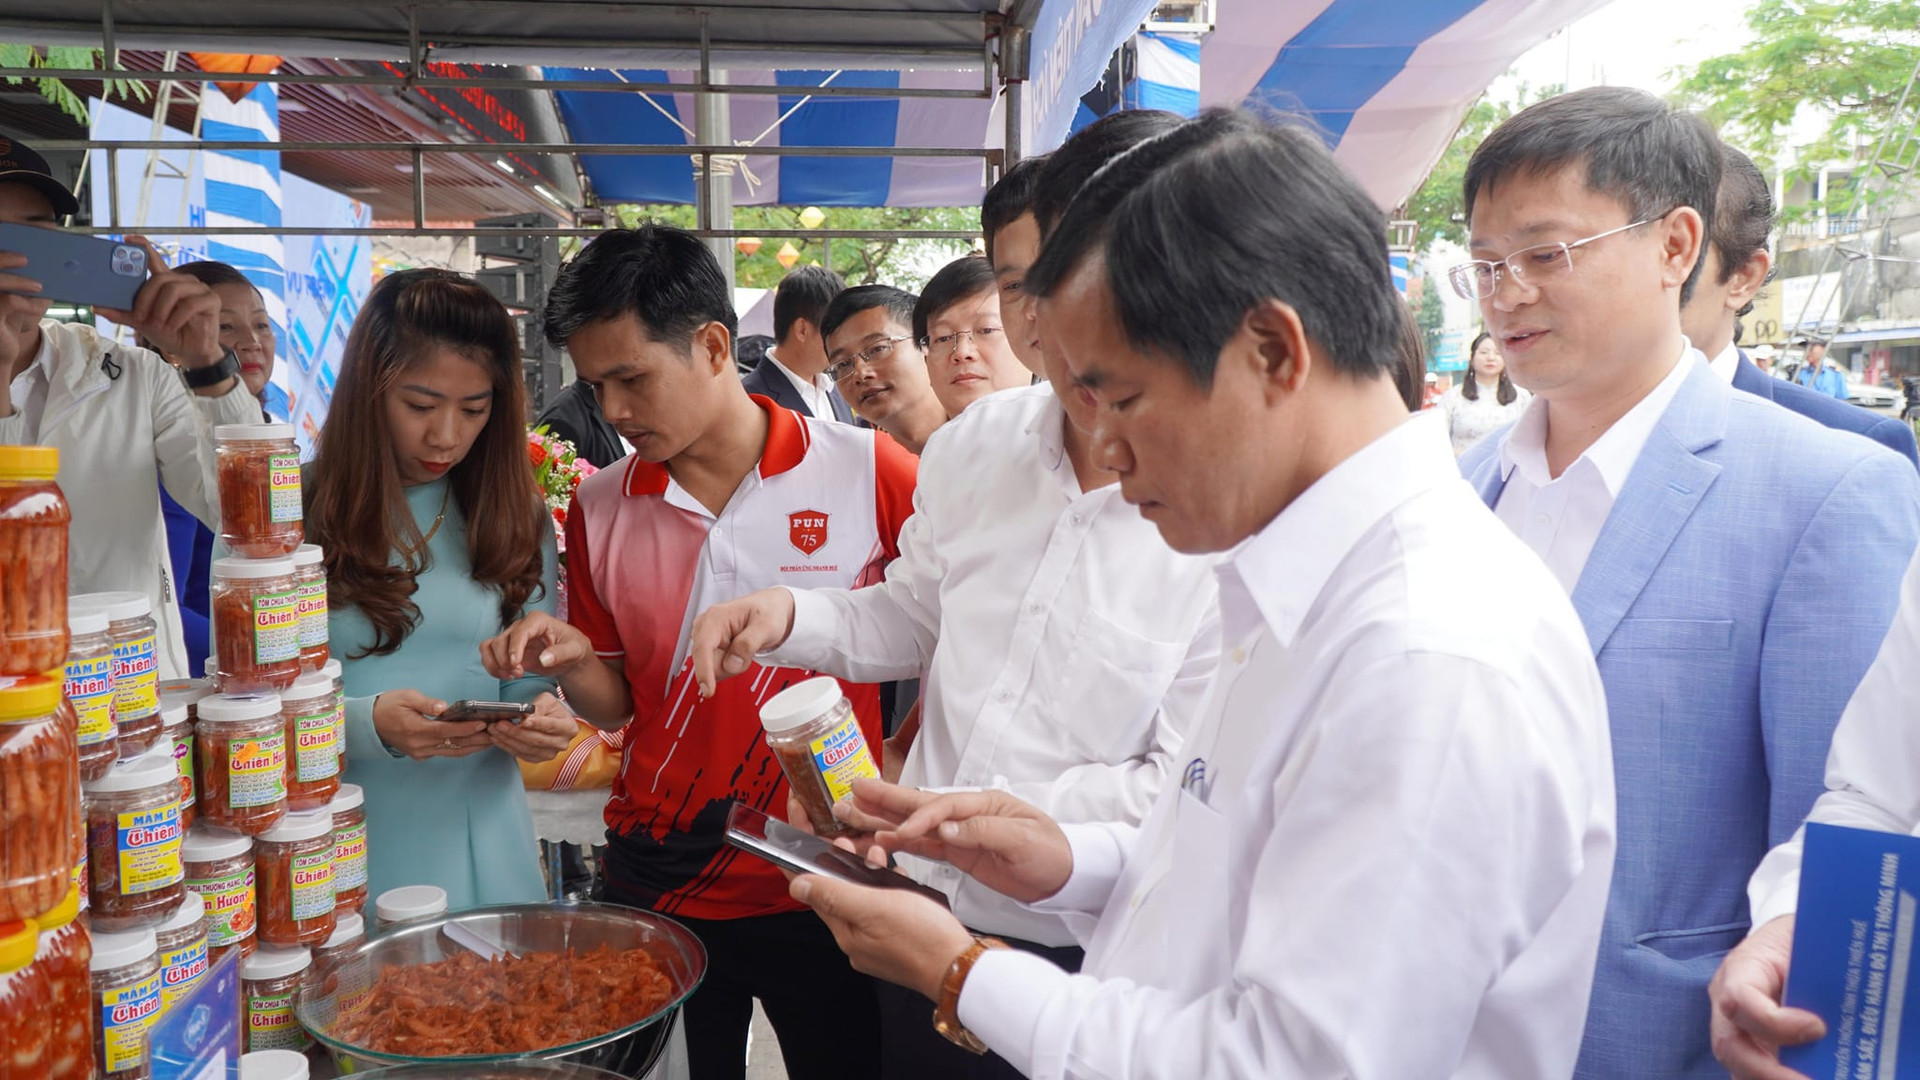 Giải pháp thanh toán số trên Hue-S là kết quả ban đầu của nội dung hợp tác chuyển đổi số giữa UBND tỉnh Thừa Thiên Huế và Tập đoàn FPT